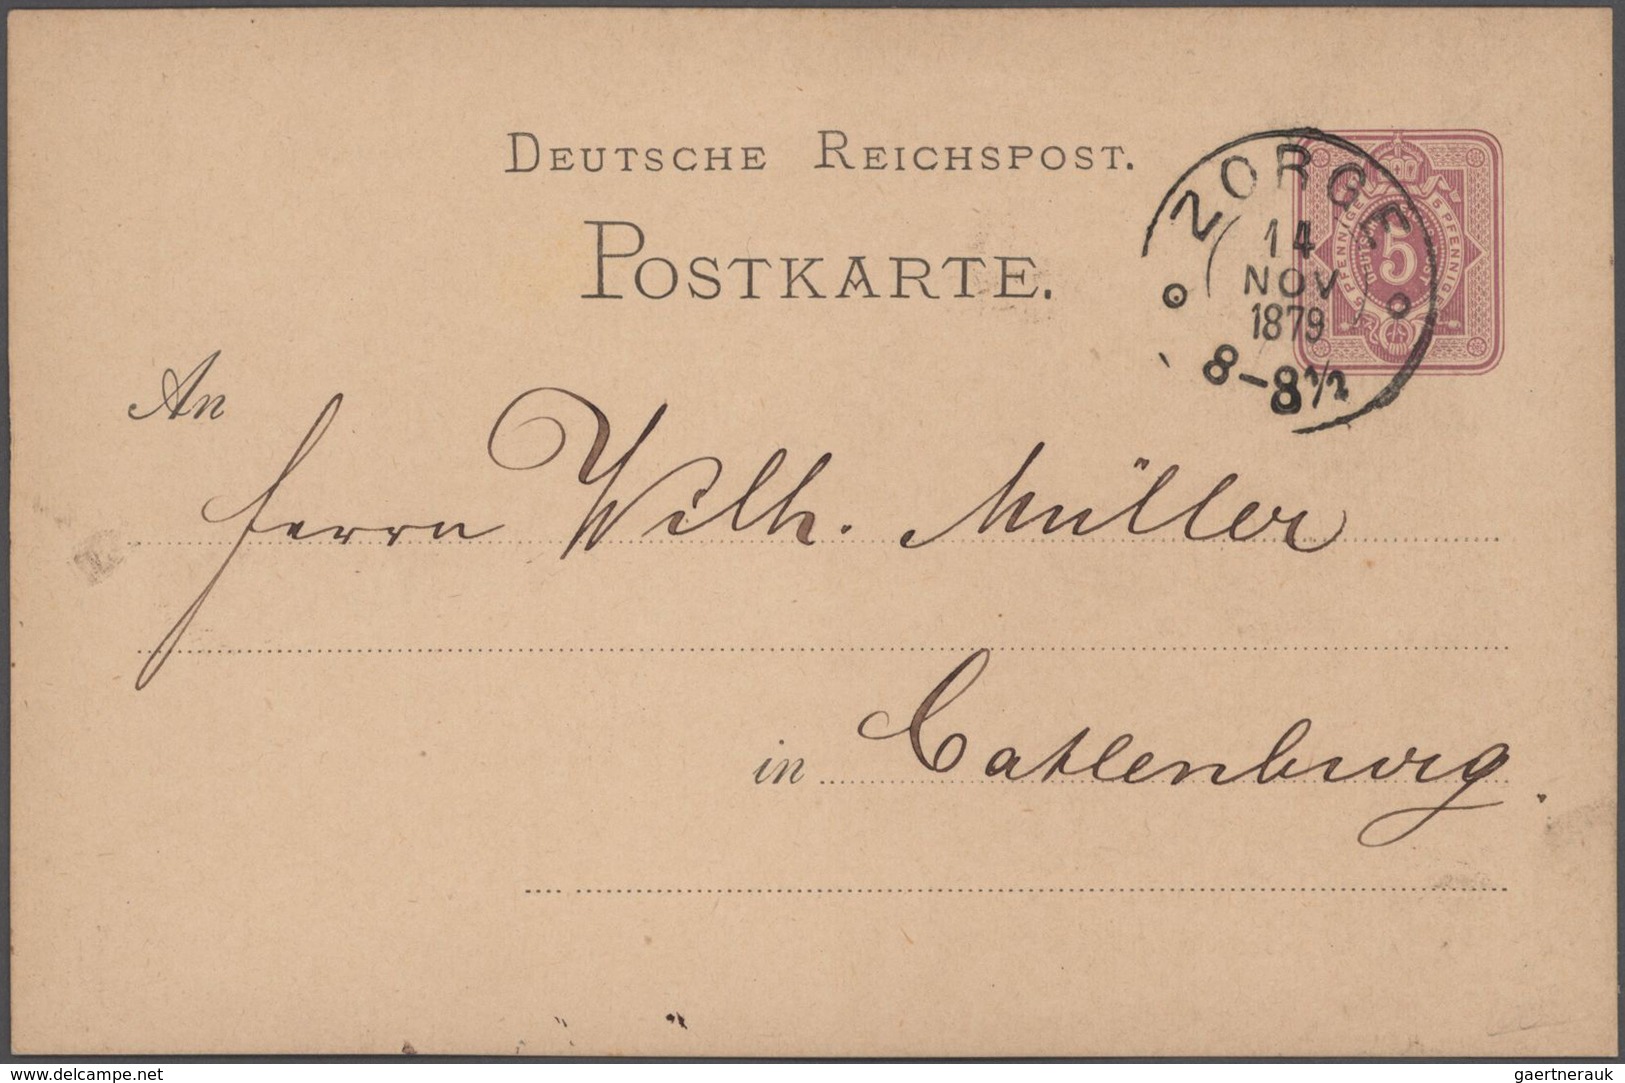 Altdeutschland: 1855/76 Album mit ca. 190 Faltbriefen und gebrauchten Ganzsachen (vor allem frühe Au